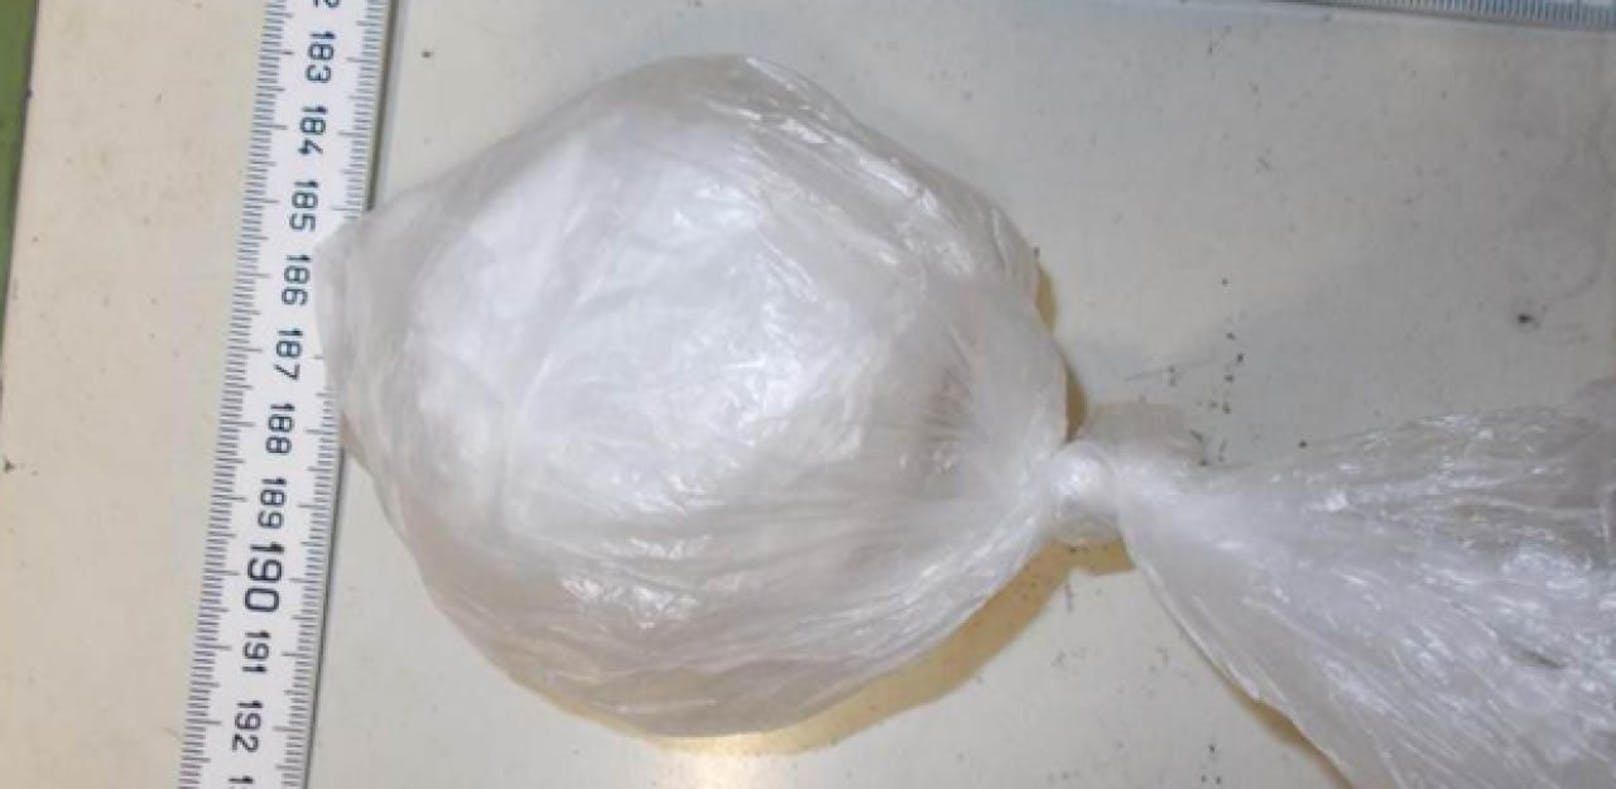 (Symbolfoto) 3-jähriger Bub aus Villach fand Kokain­päckchen vor Kindergarten
